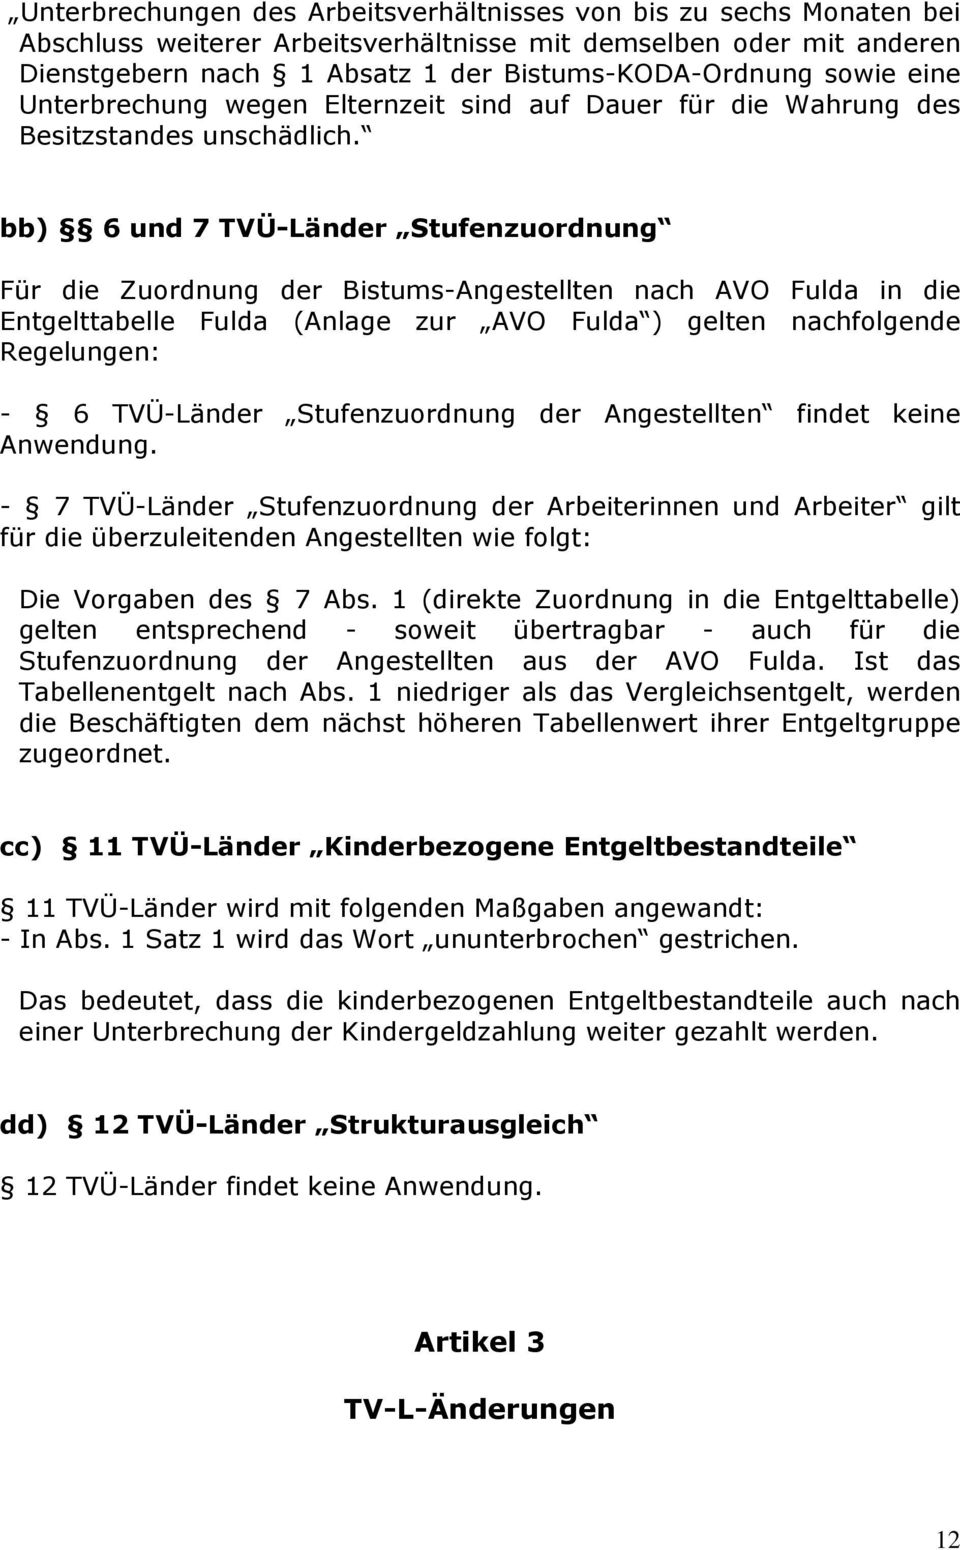 bb) 6 und 7 TVÜ-Länder Stufenzuordnung Für die Zuordnung der Bistums-Angestellten nach AVO Fulda in die Entgelttabelle Fulda (Anlage zur AVO Fulda ) gelten nachfolgende Regelungen: - 6 TVÜ-Länder